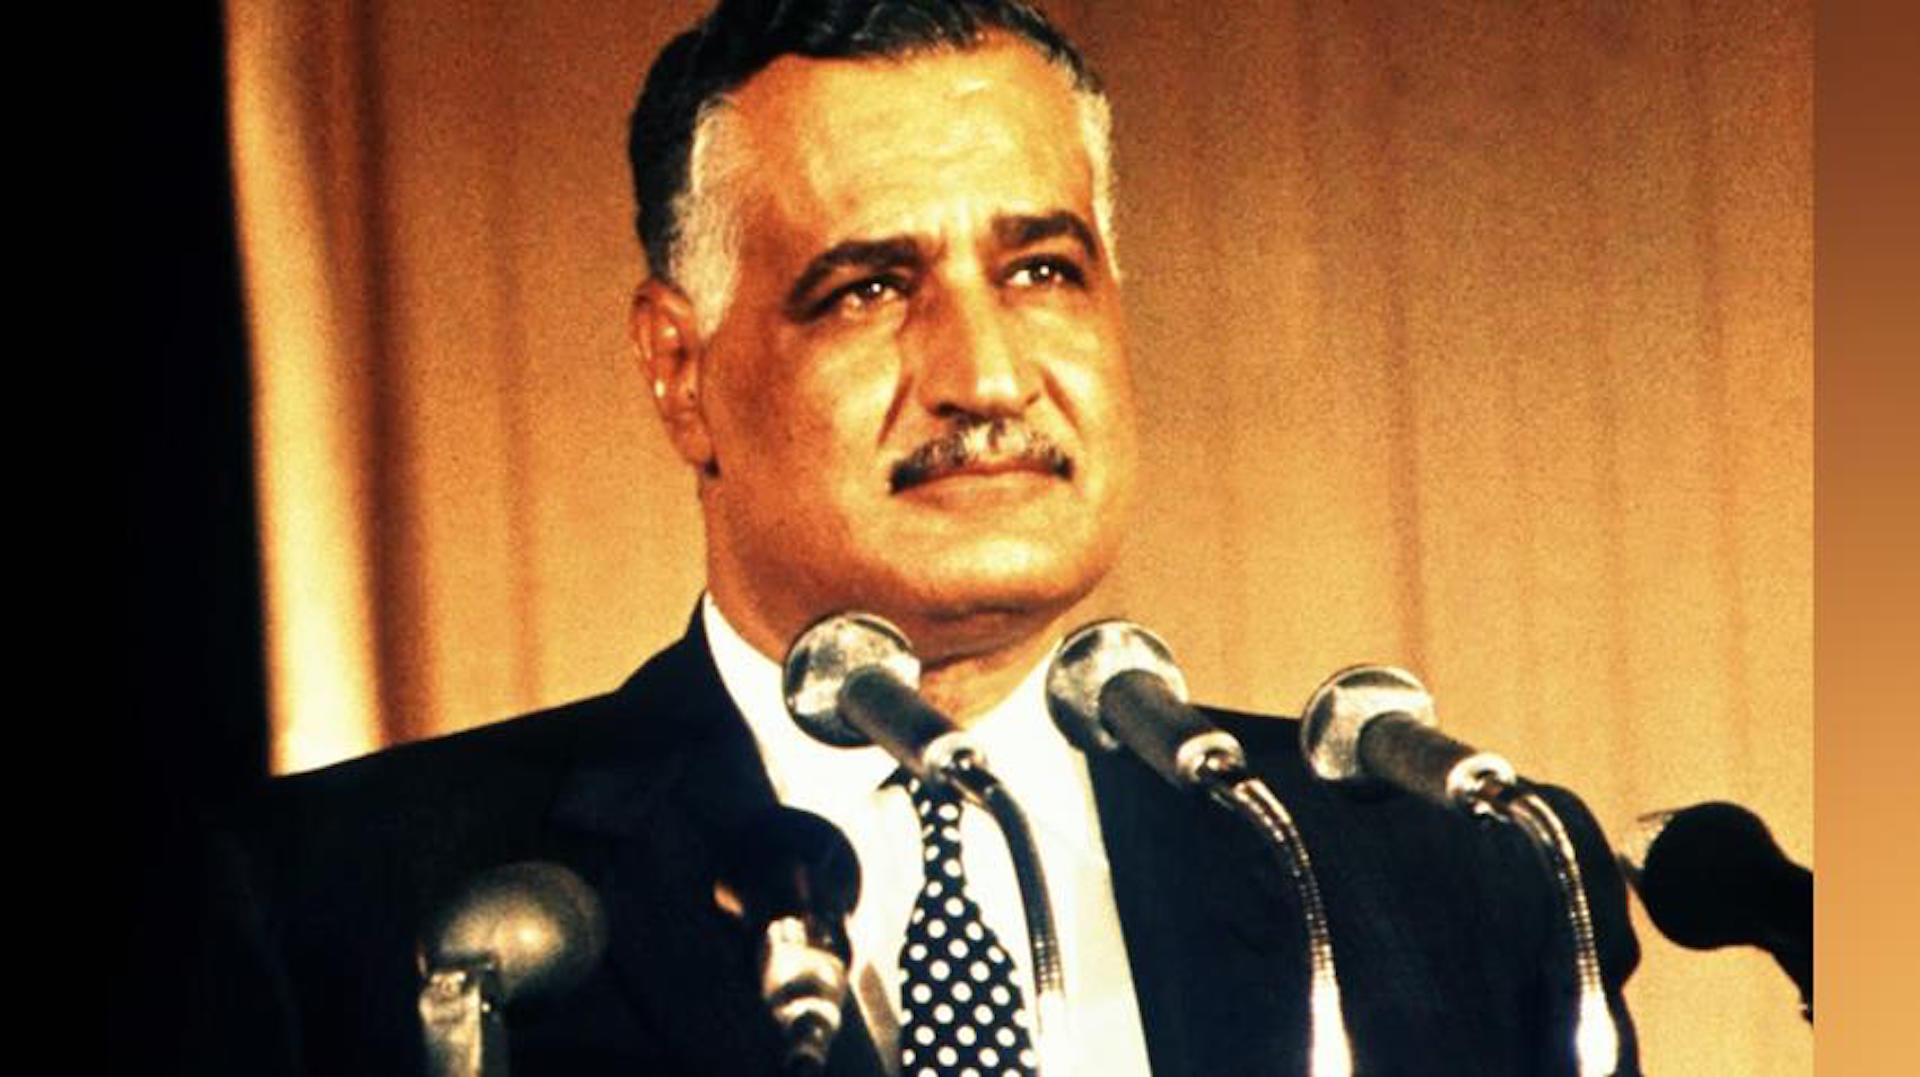 إنجازات عبد الناصر الاقتصادية والصناعية تخلد ذكراه رغم التحديات في ذكرى يونيو 67